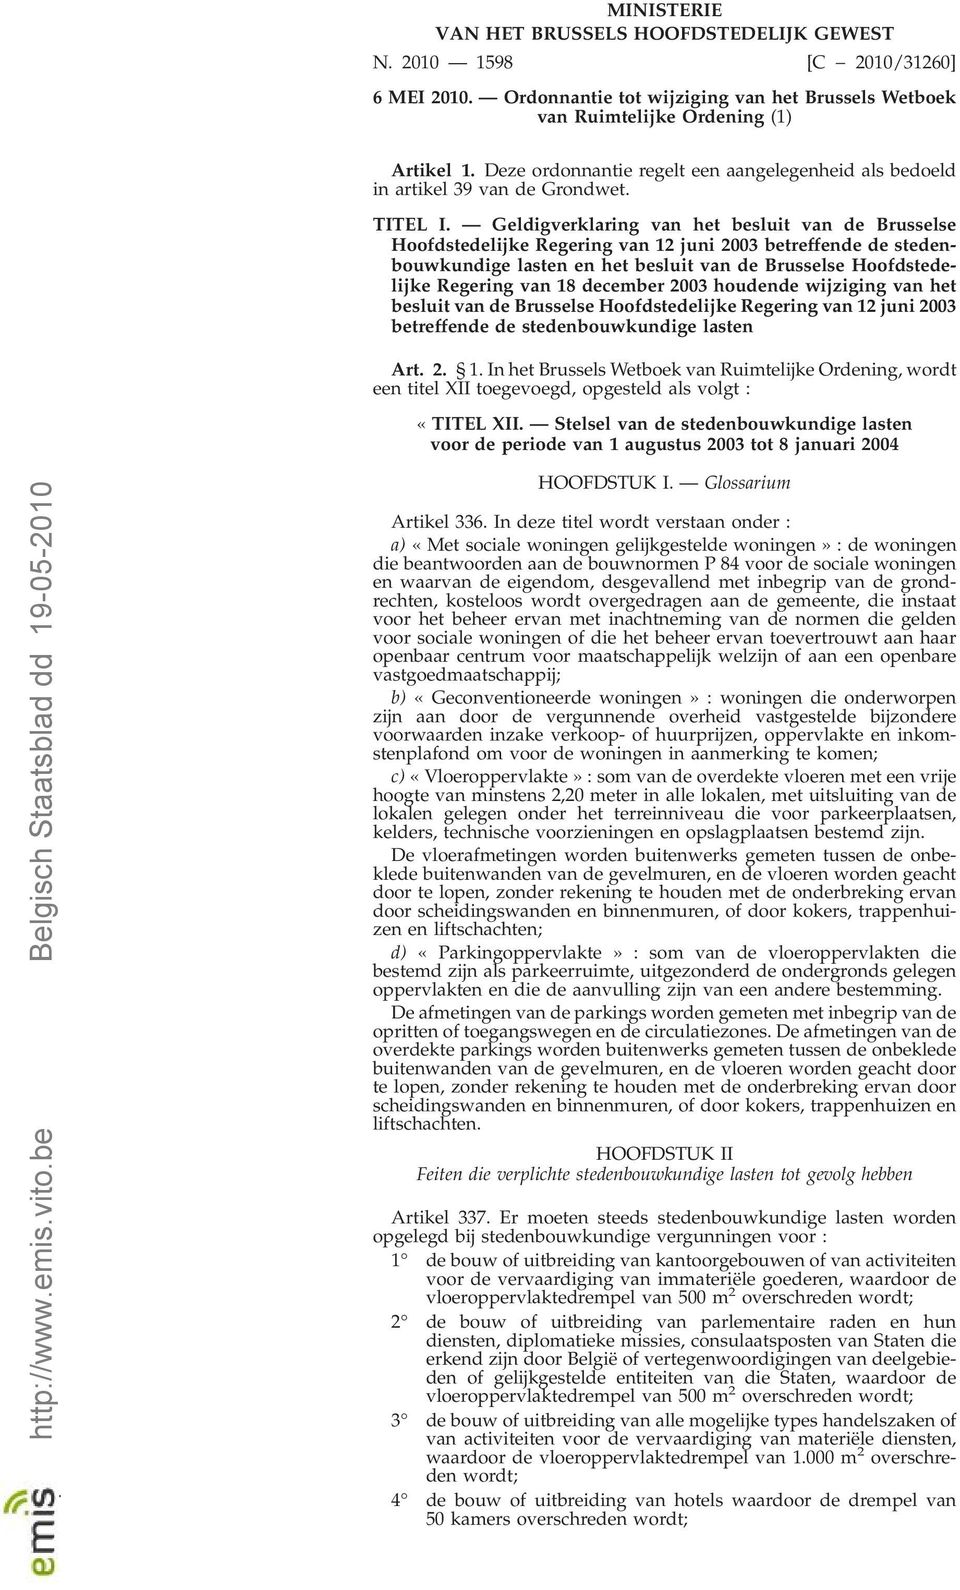 Geldigverklaring van het besluit van de Brusselse Hoofdstedelijke Regering van 12 juni 2003 betreffende de stedenbouwkundige lasten en het besluit van de Brusselse Hoofdstedelijke Regering van 18